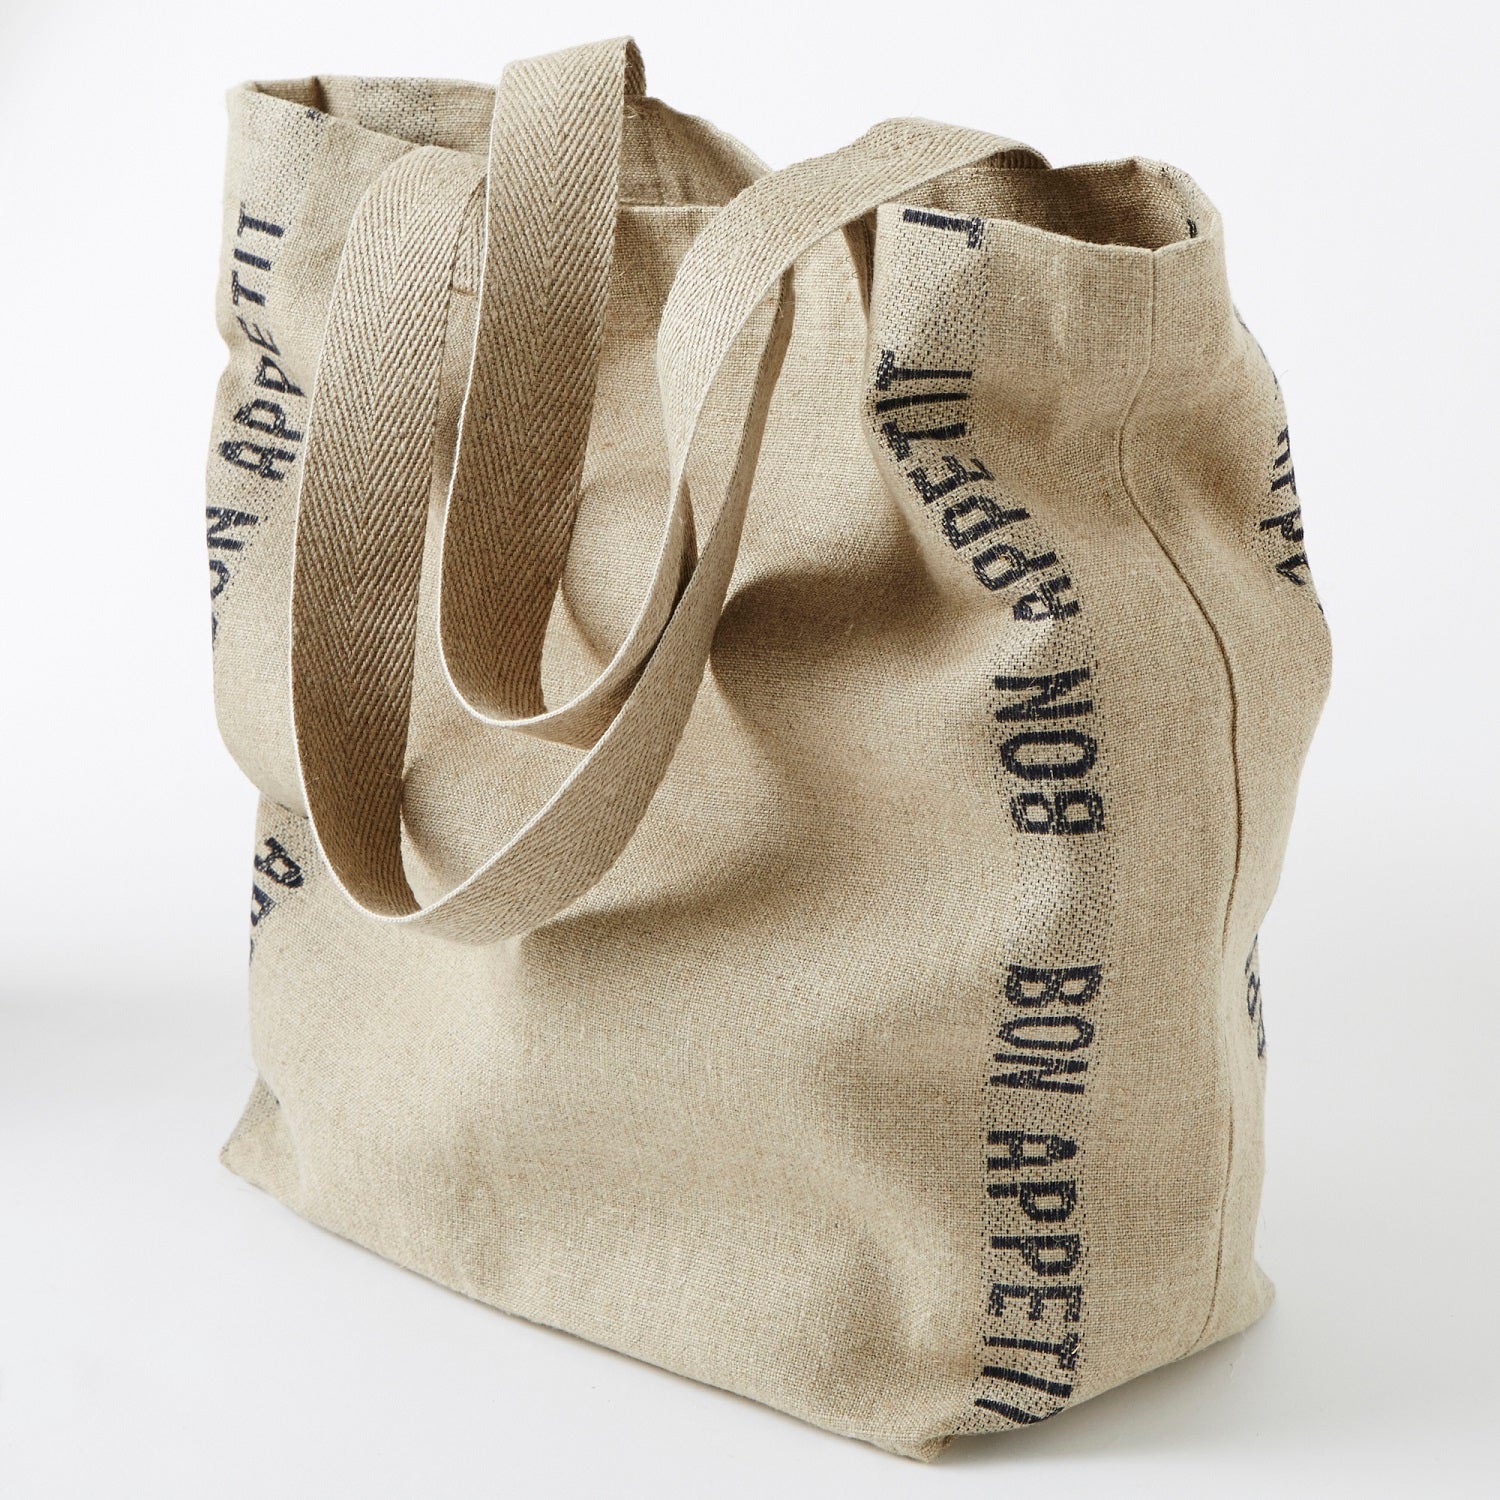 Charvet Editions "Bon Appetit" (Black), Natural / Black linen bag. Made in France.